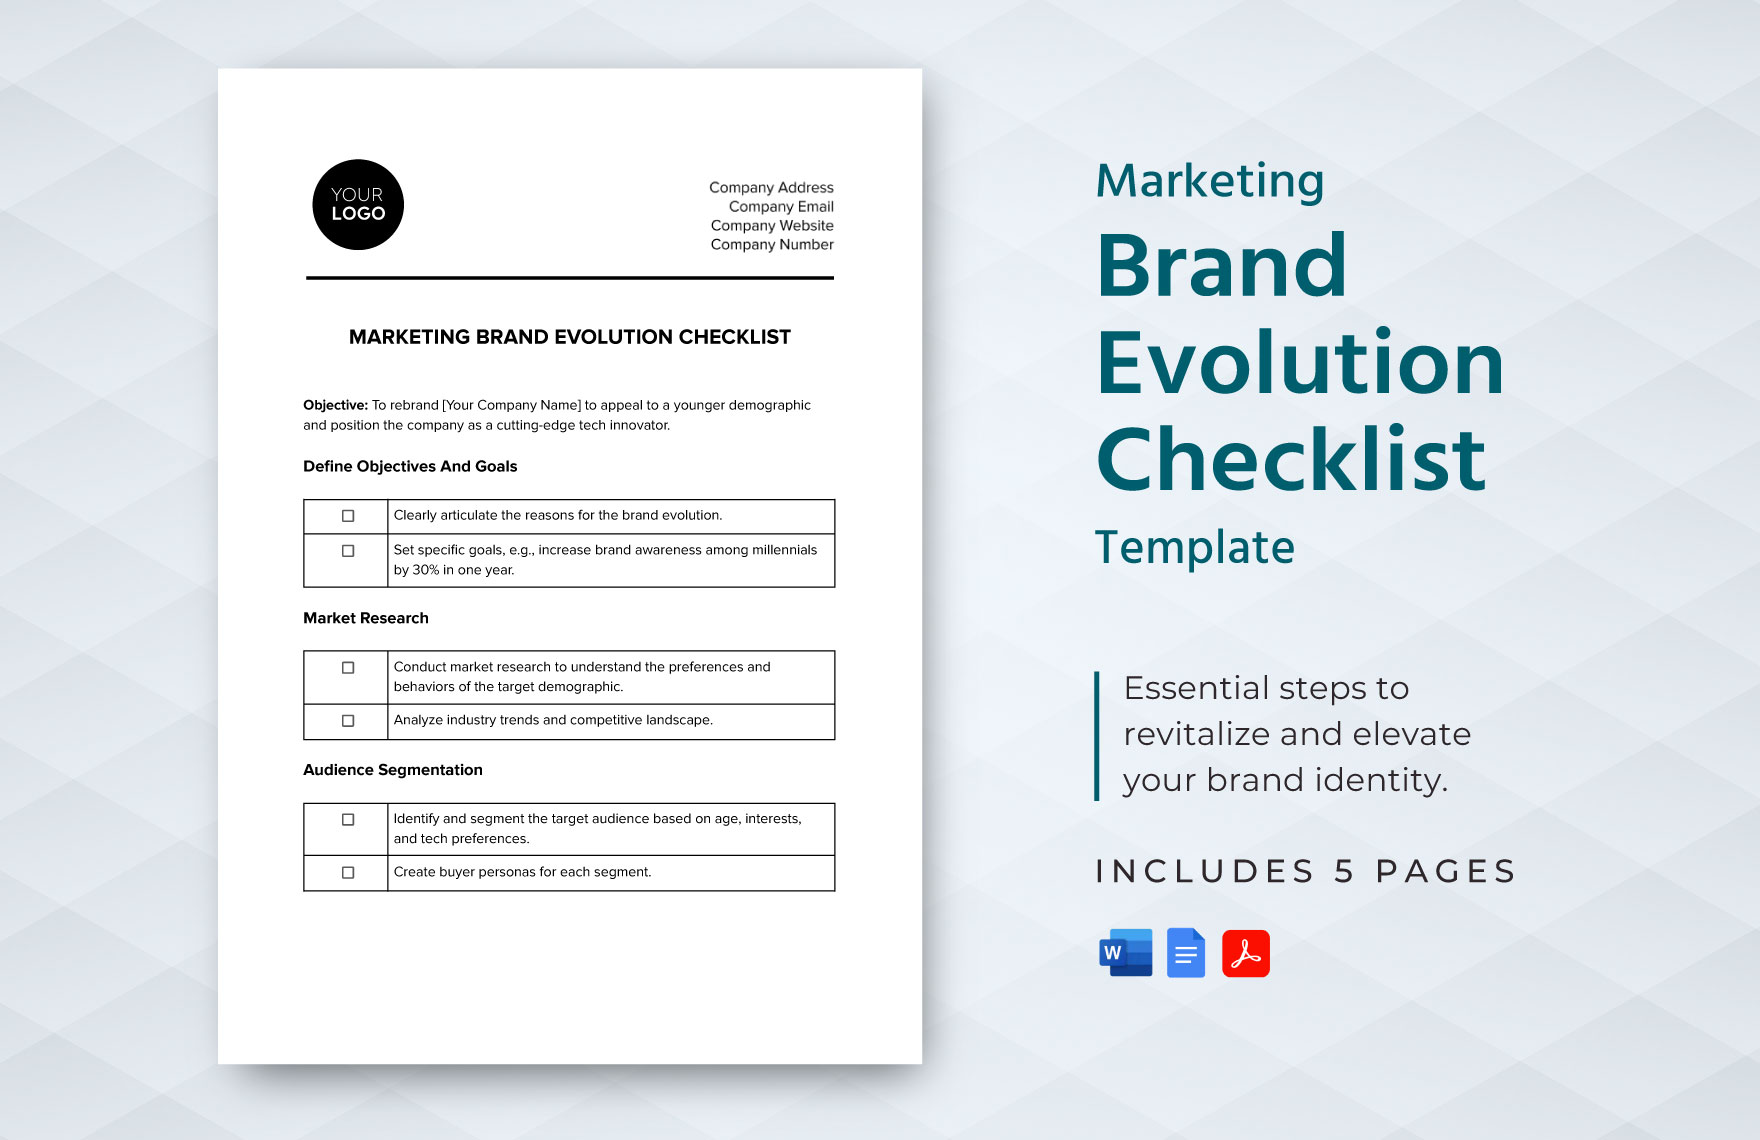 Marketing Brand Evolution Checklist Template